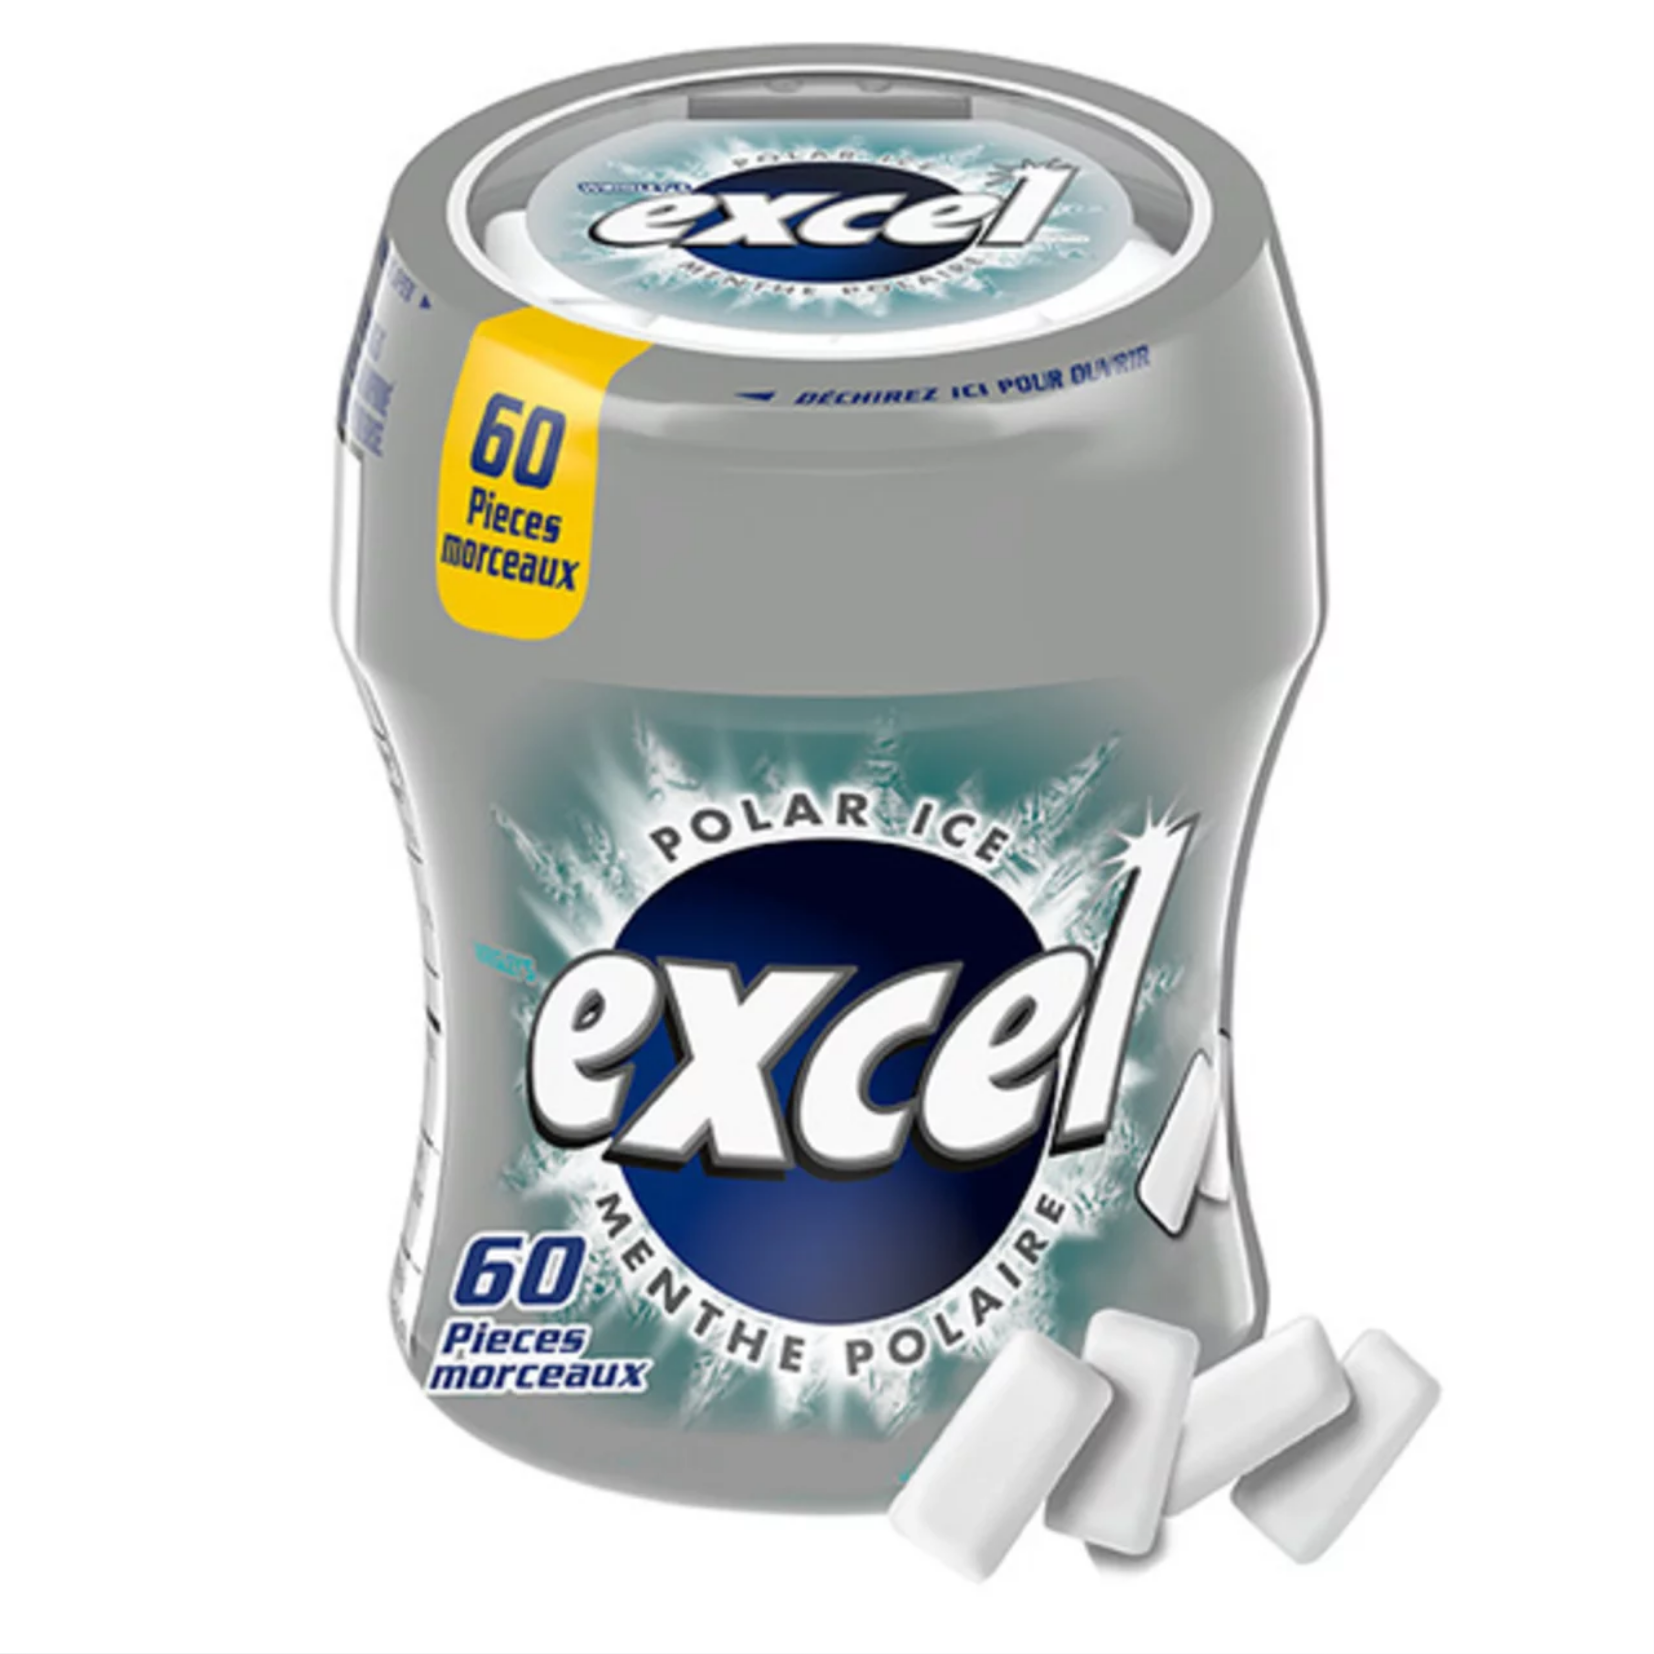 Excel Polar Ice Gum 60ct